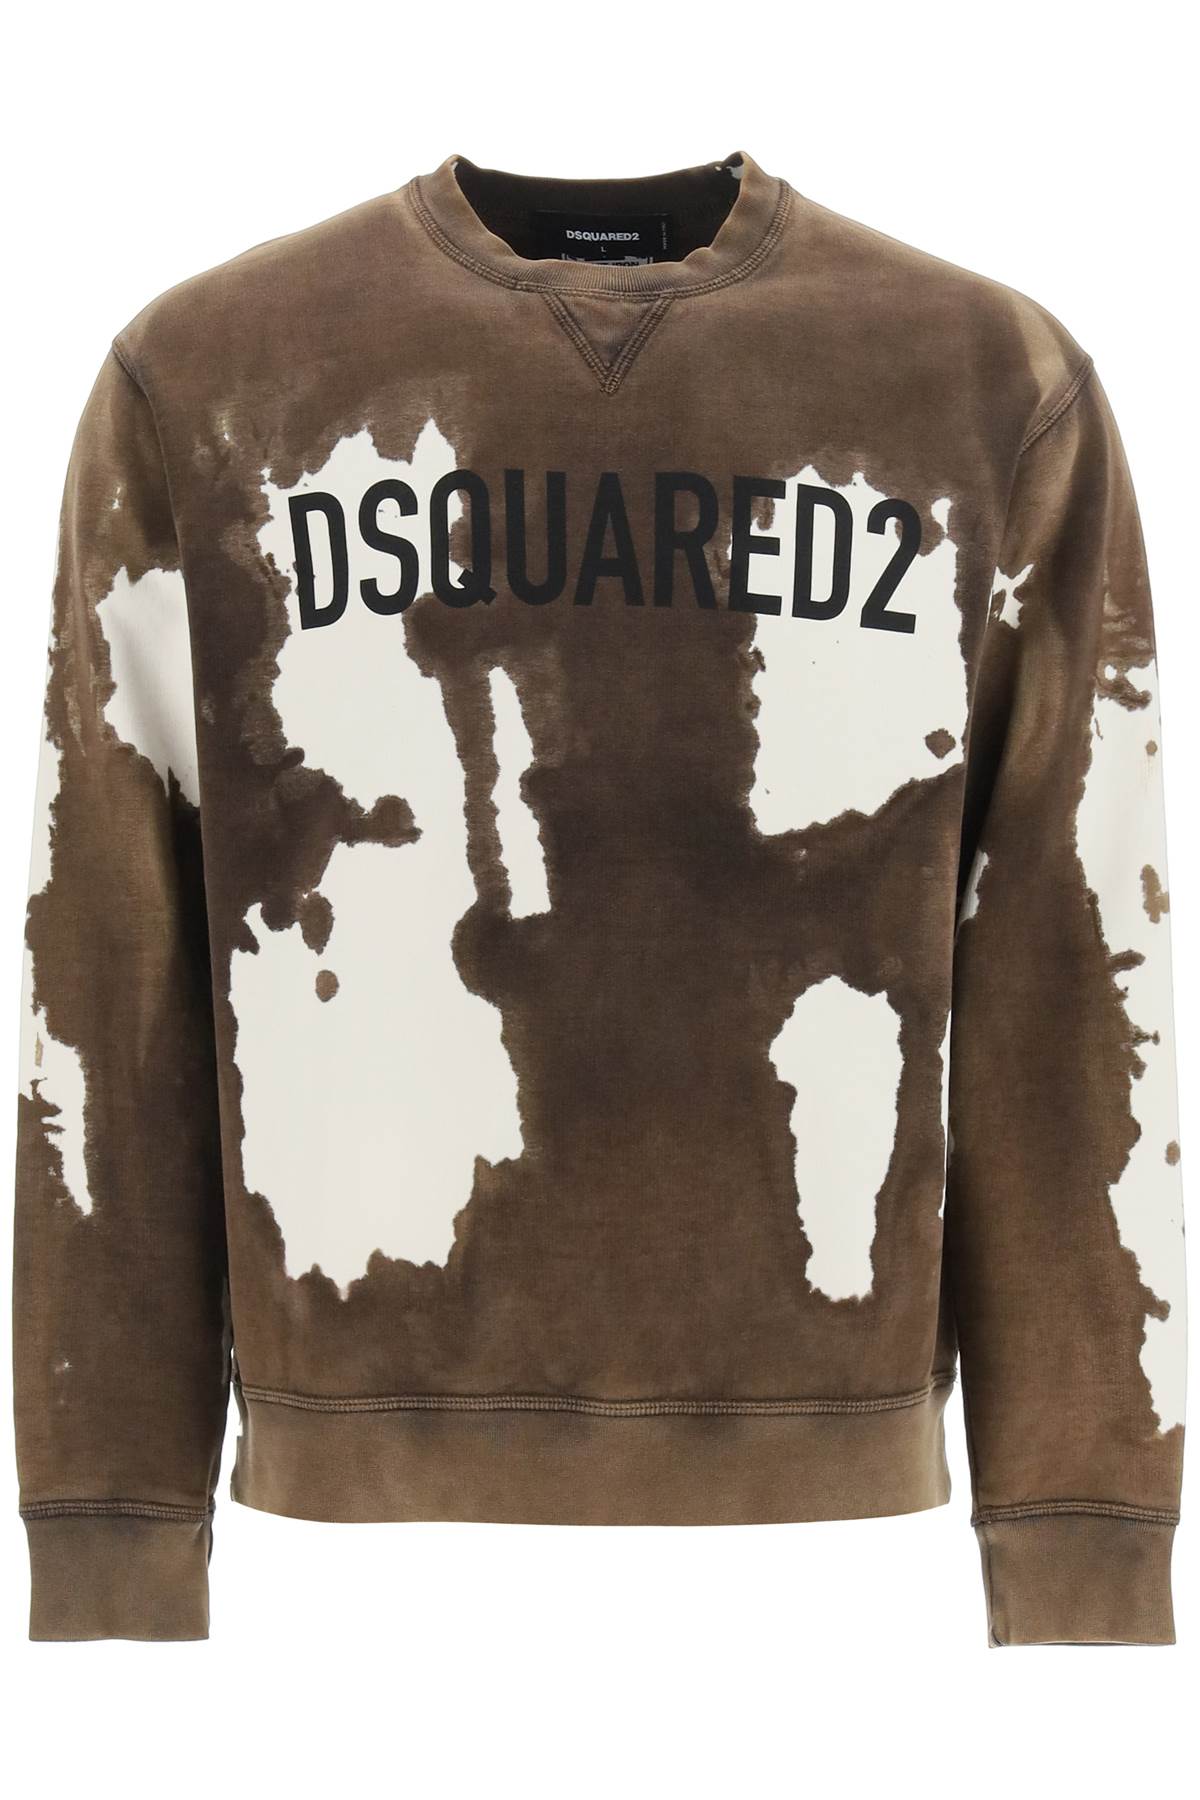 Dsquared2 Tie-dye Cool Sweatshirt